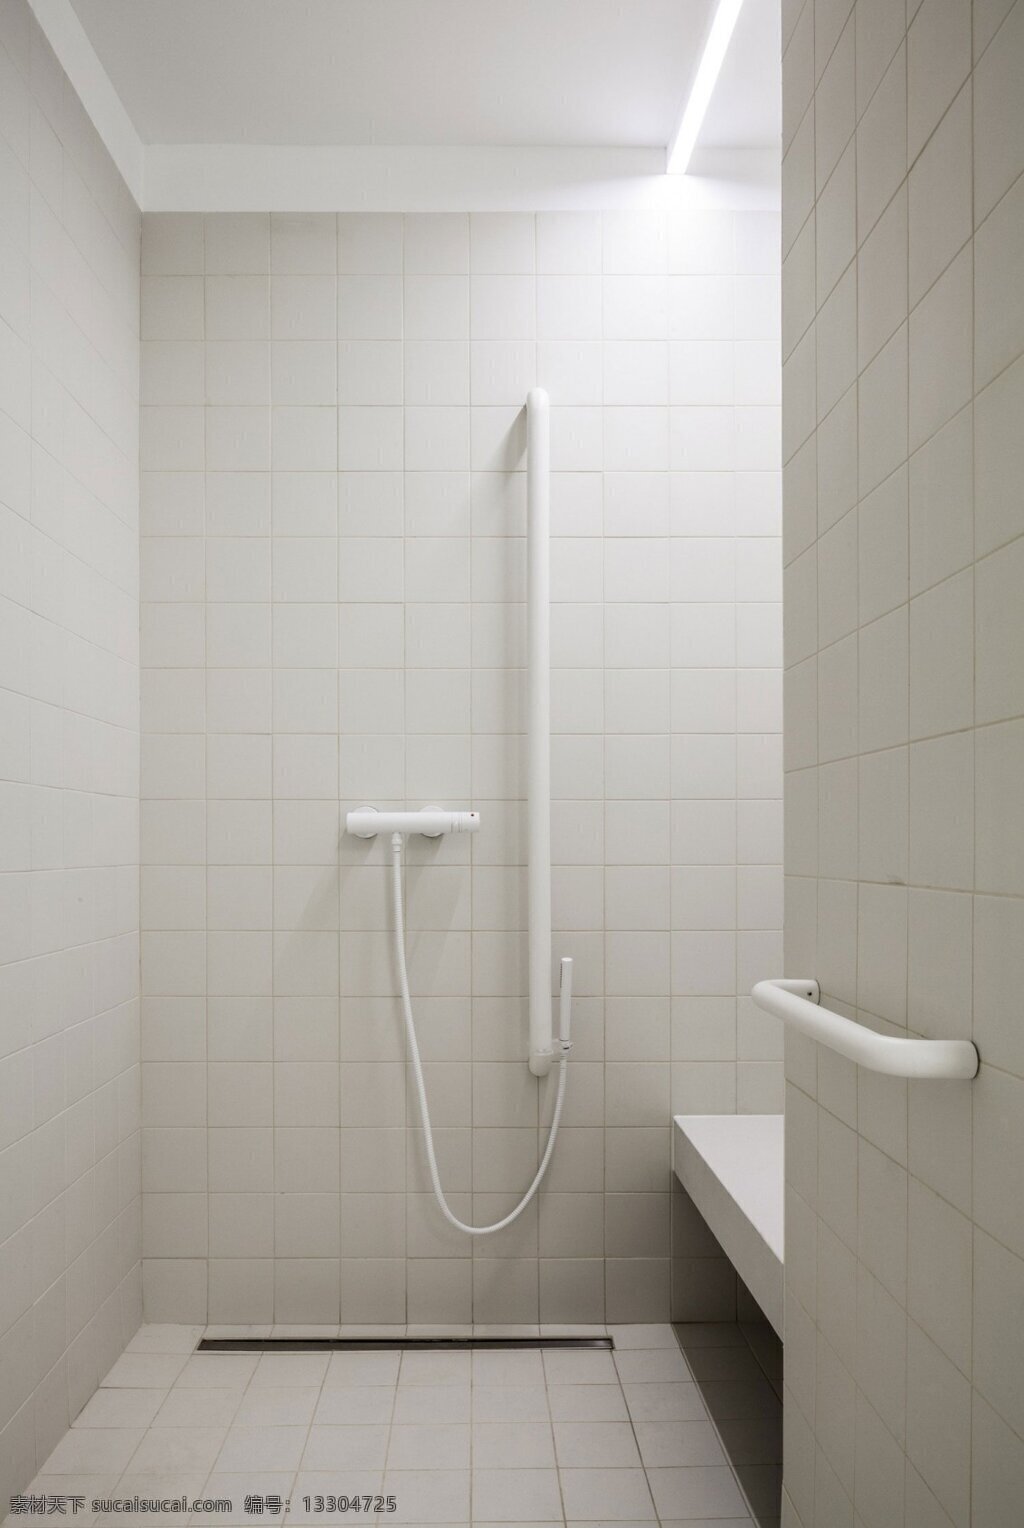 简约 卫生间 白色 灯光 装修 效果图 卫生巾 淋浴间 扶手 白色墙壁 格子 地板砖